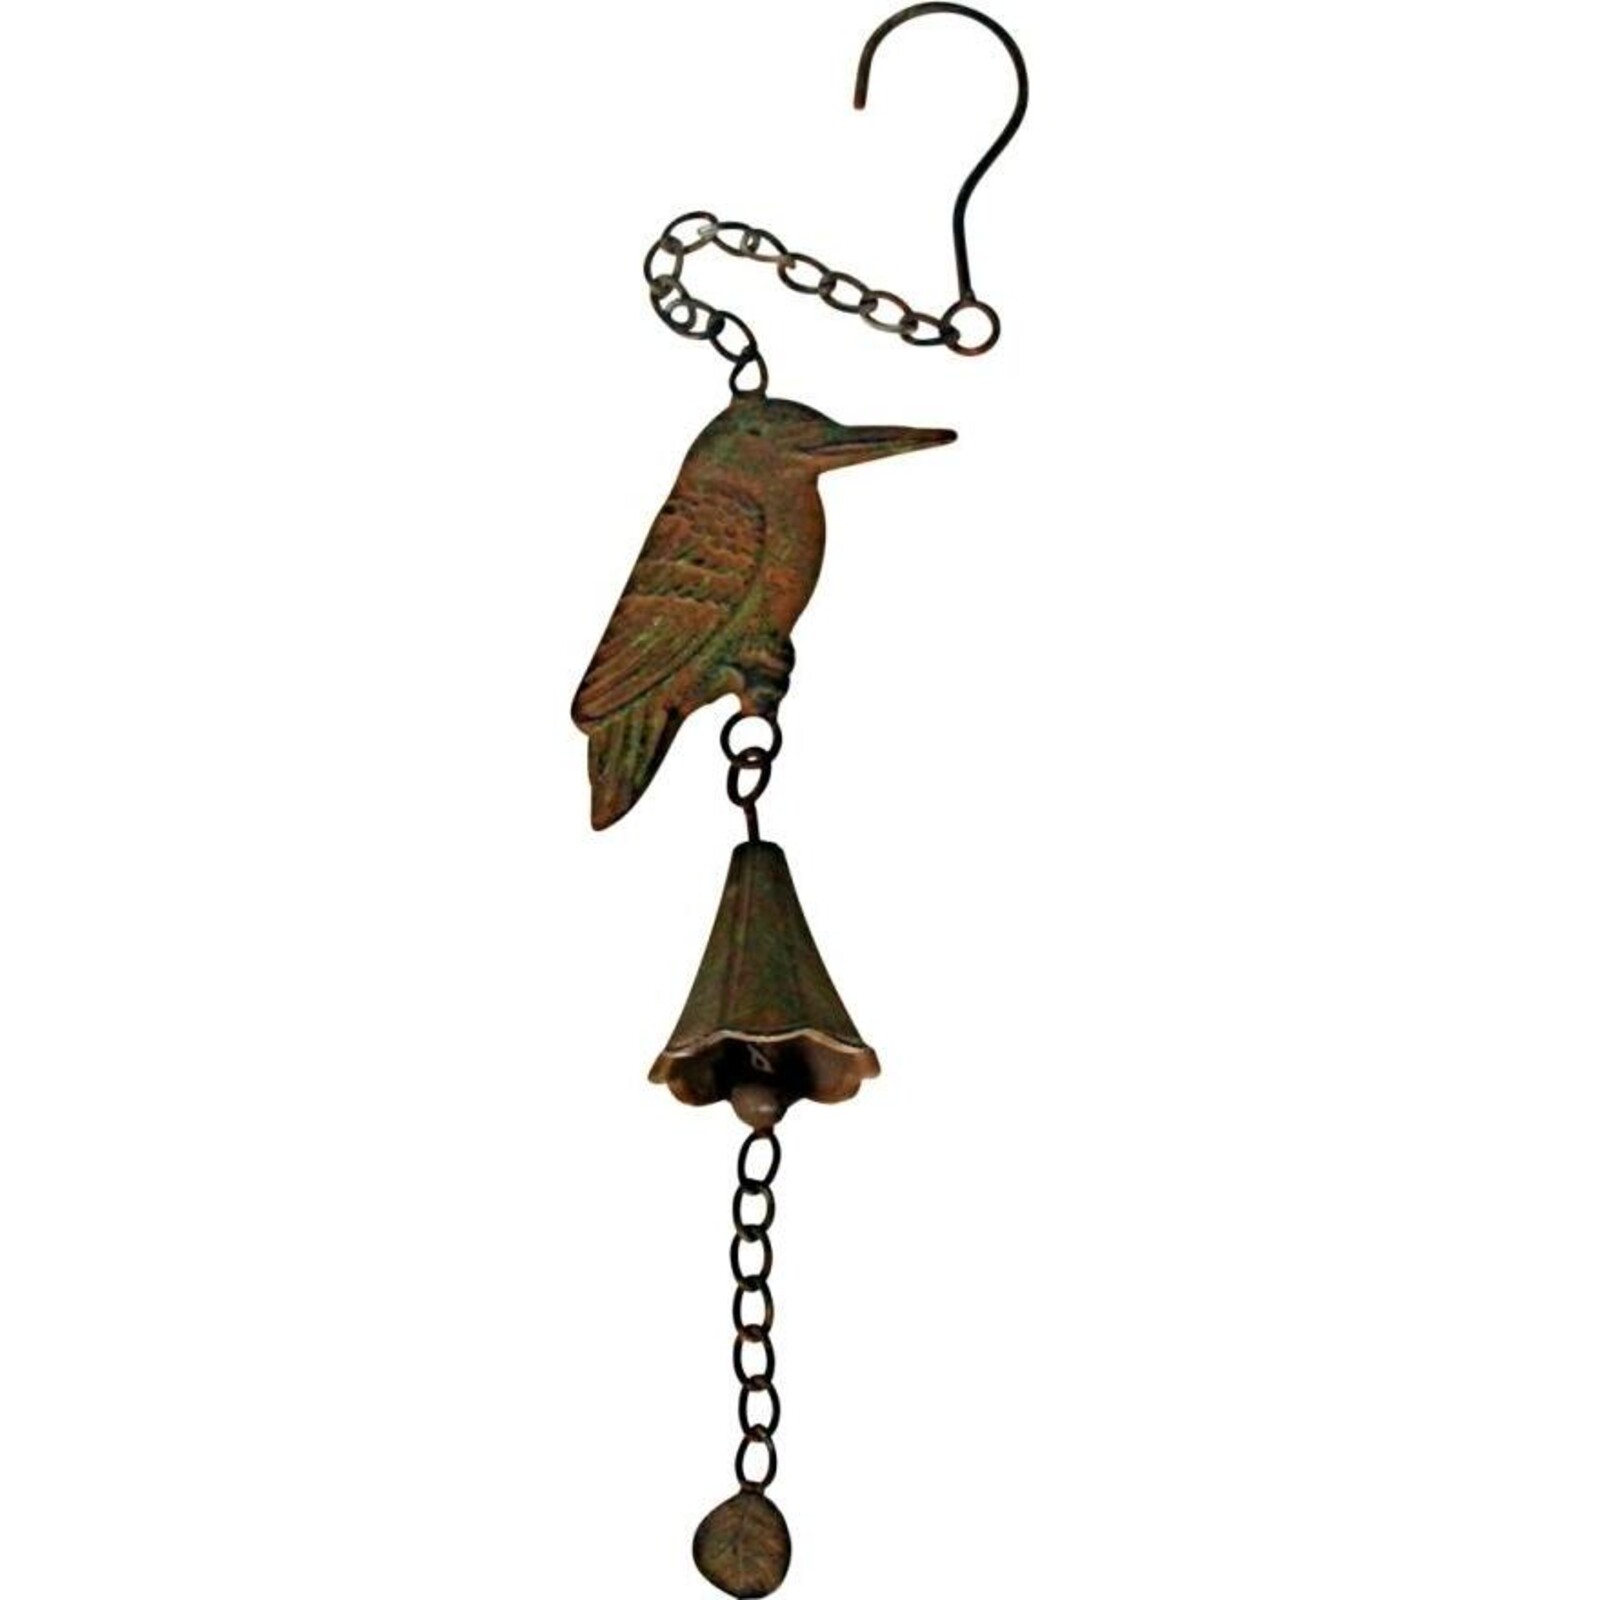 Hanging Bell Kookaburra